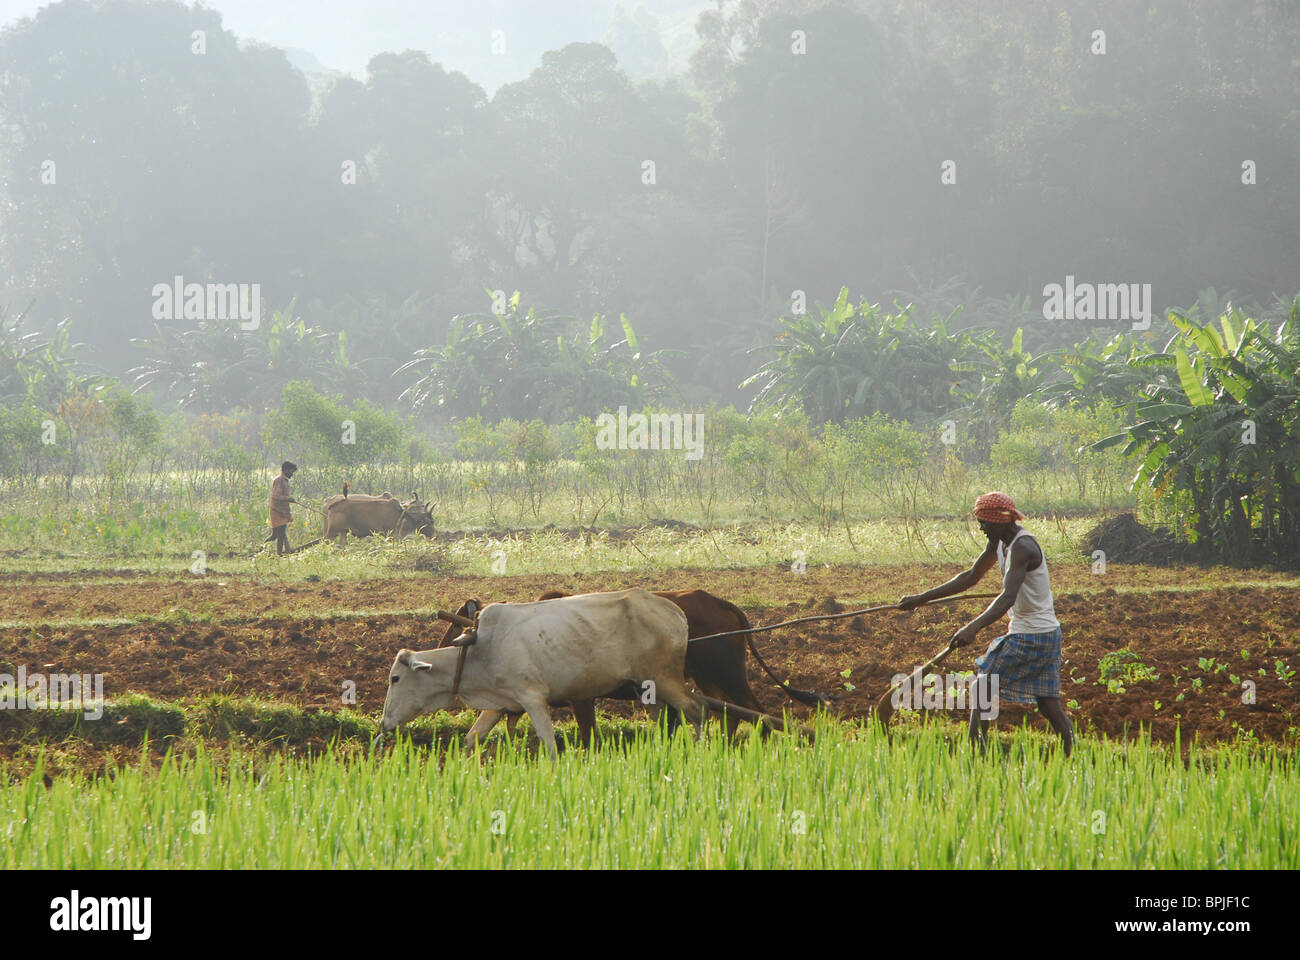 À l'aide de boeufs paysan labourer le champ, dans la région de tribu du district de Koraput dans le sud de l'Orissa, Inde, Asie Banque D'Images